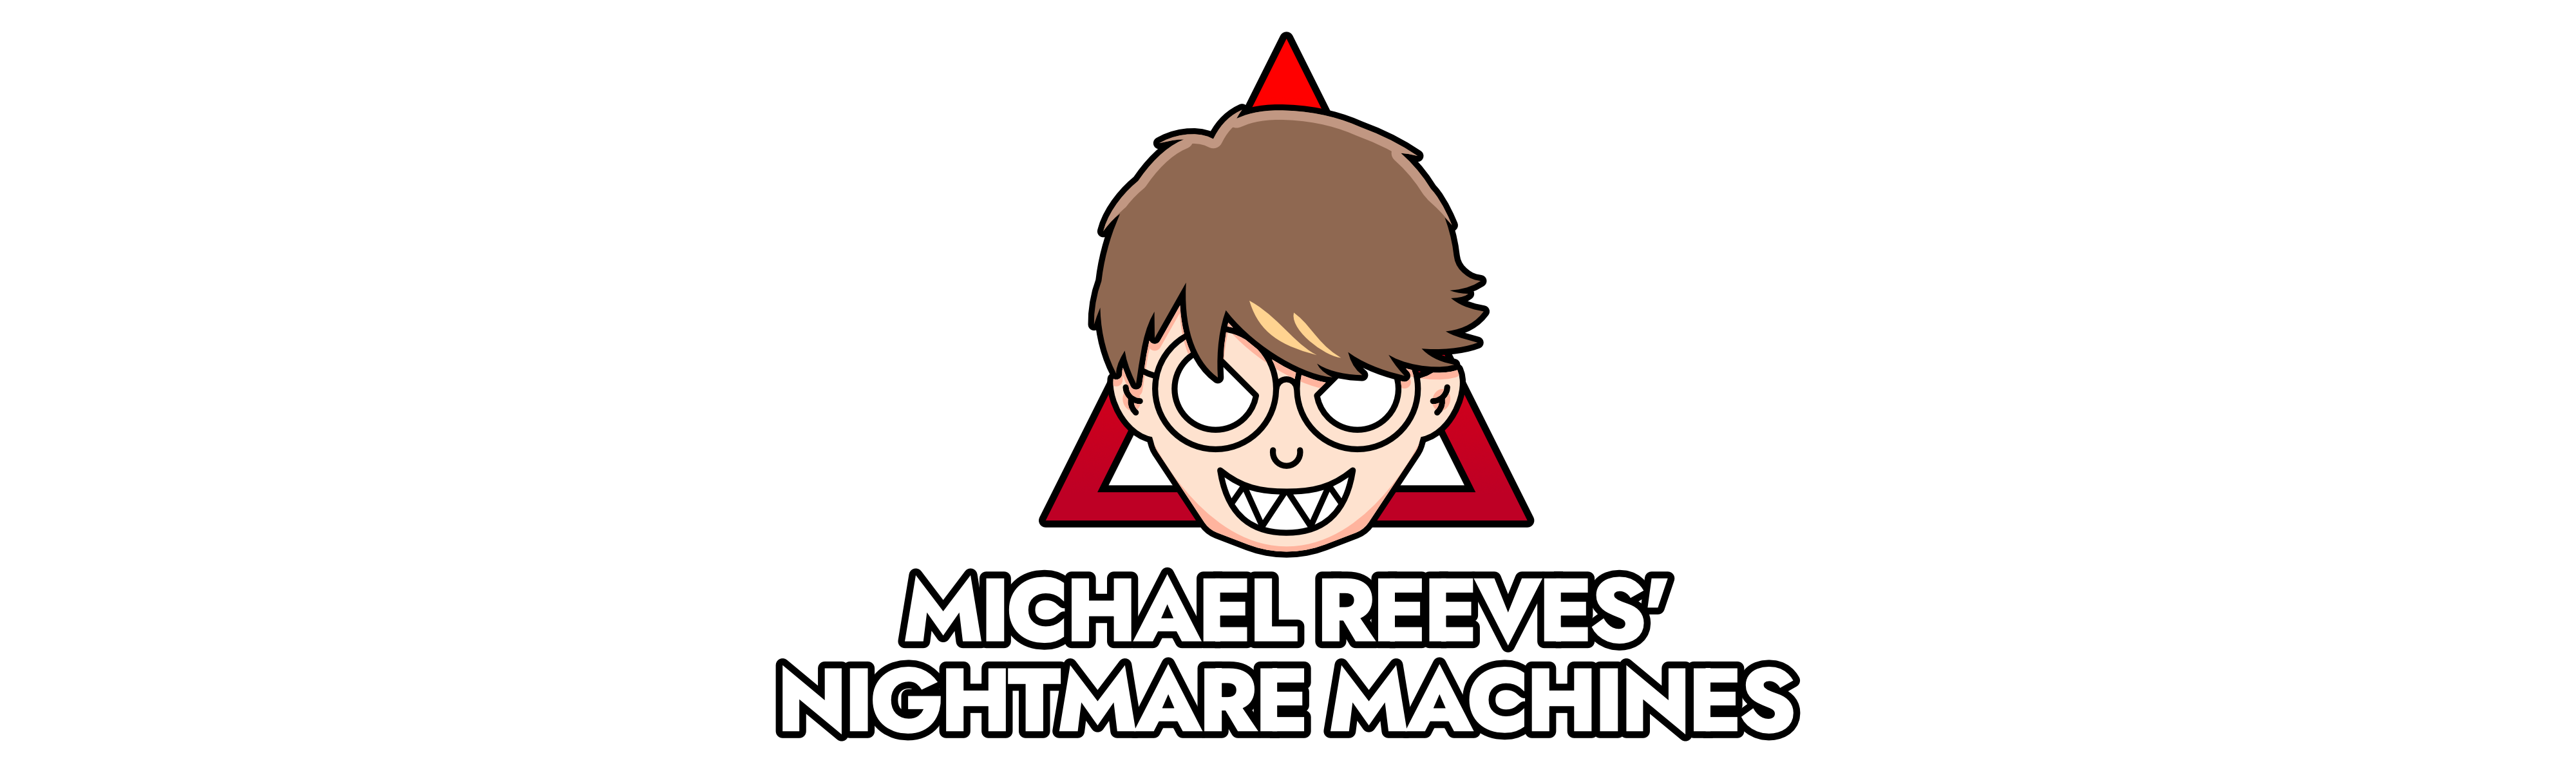 Michael Reeves' Nightmare Machines